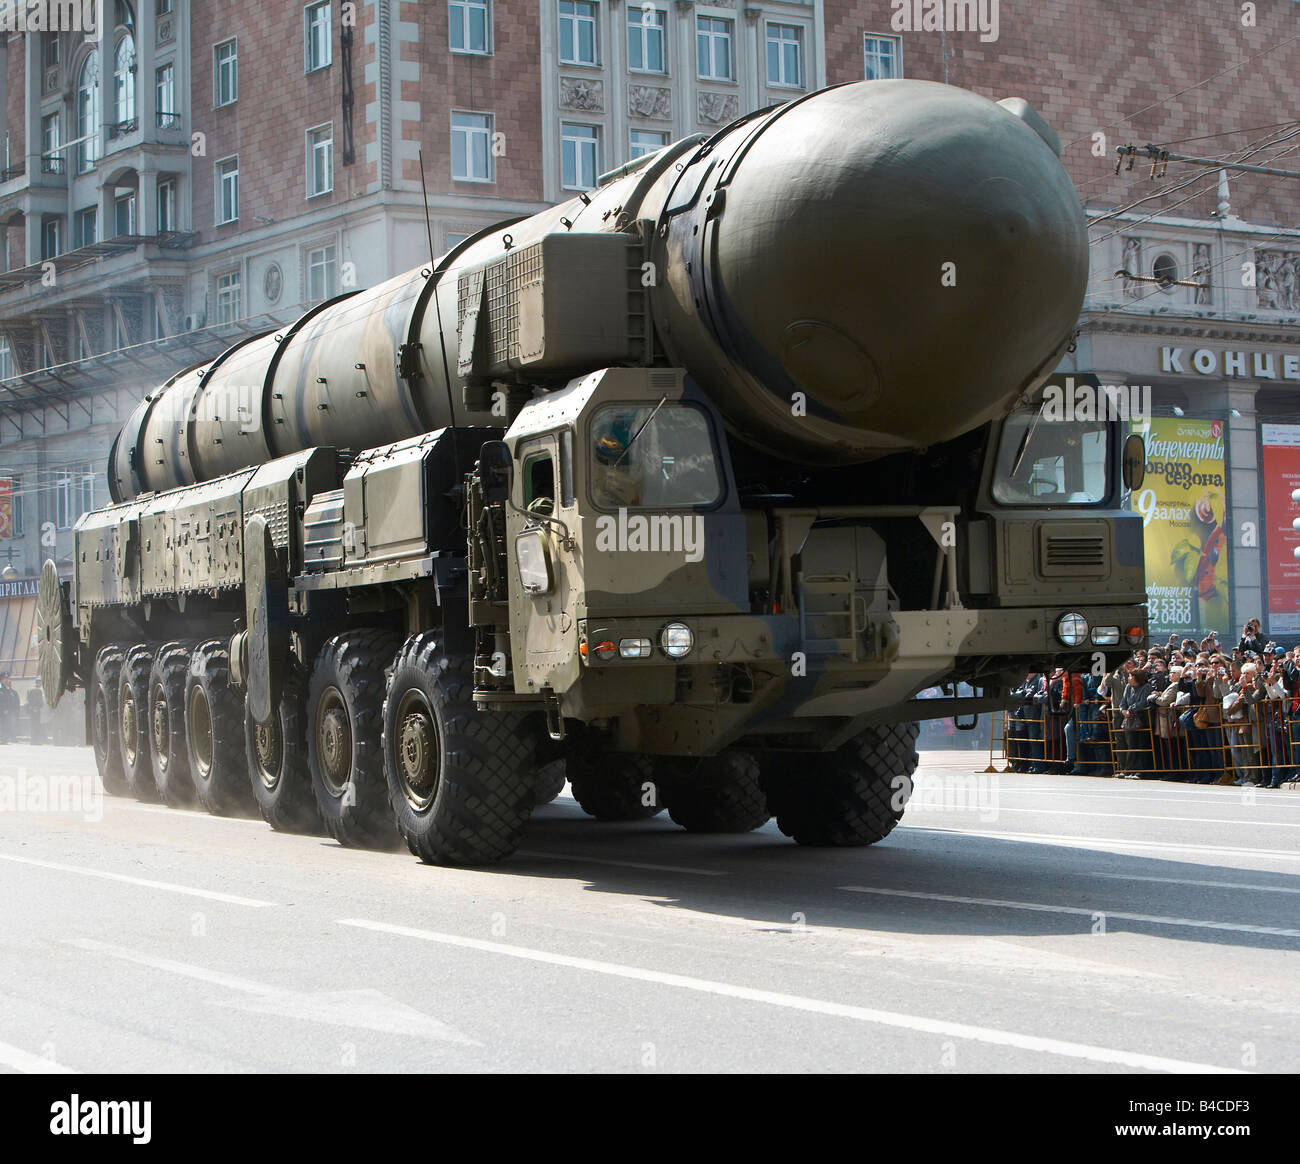 Esercito Russo mostrare armi, missile balistico Vettore, modello 7907 presso la Giornata della Vittoria Parade, Mosca Russia Foto Stock